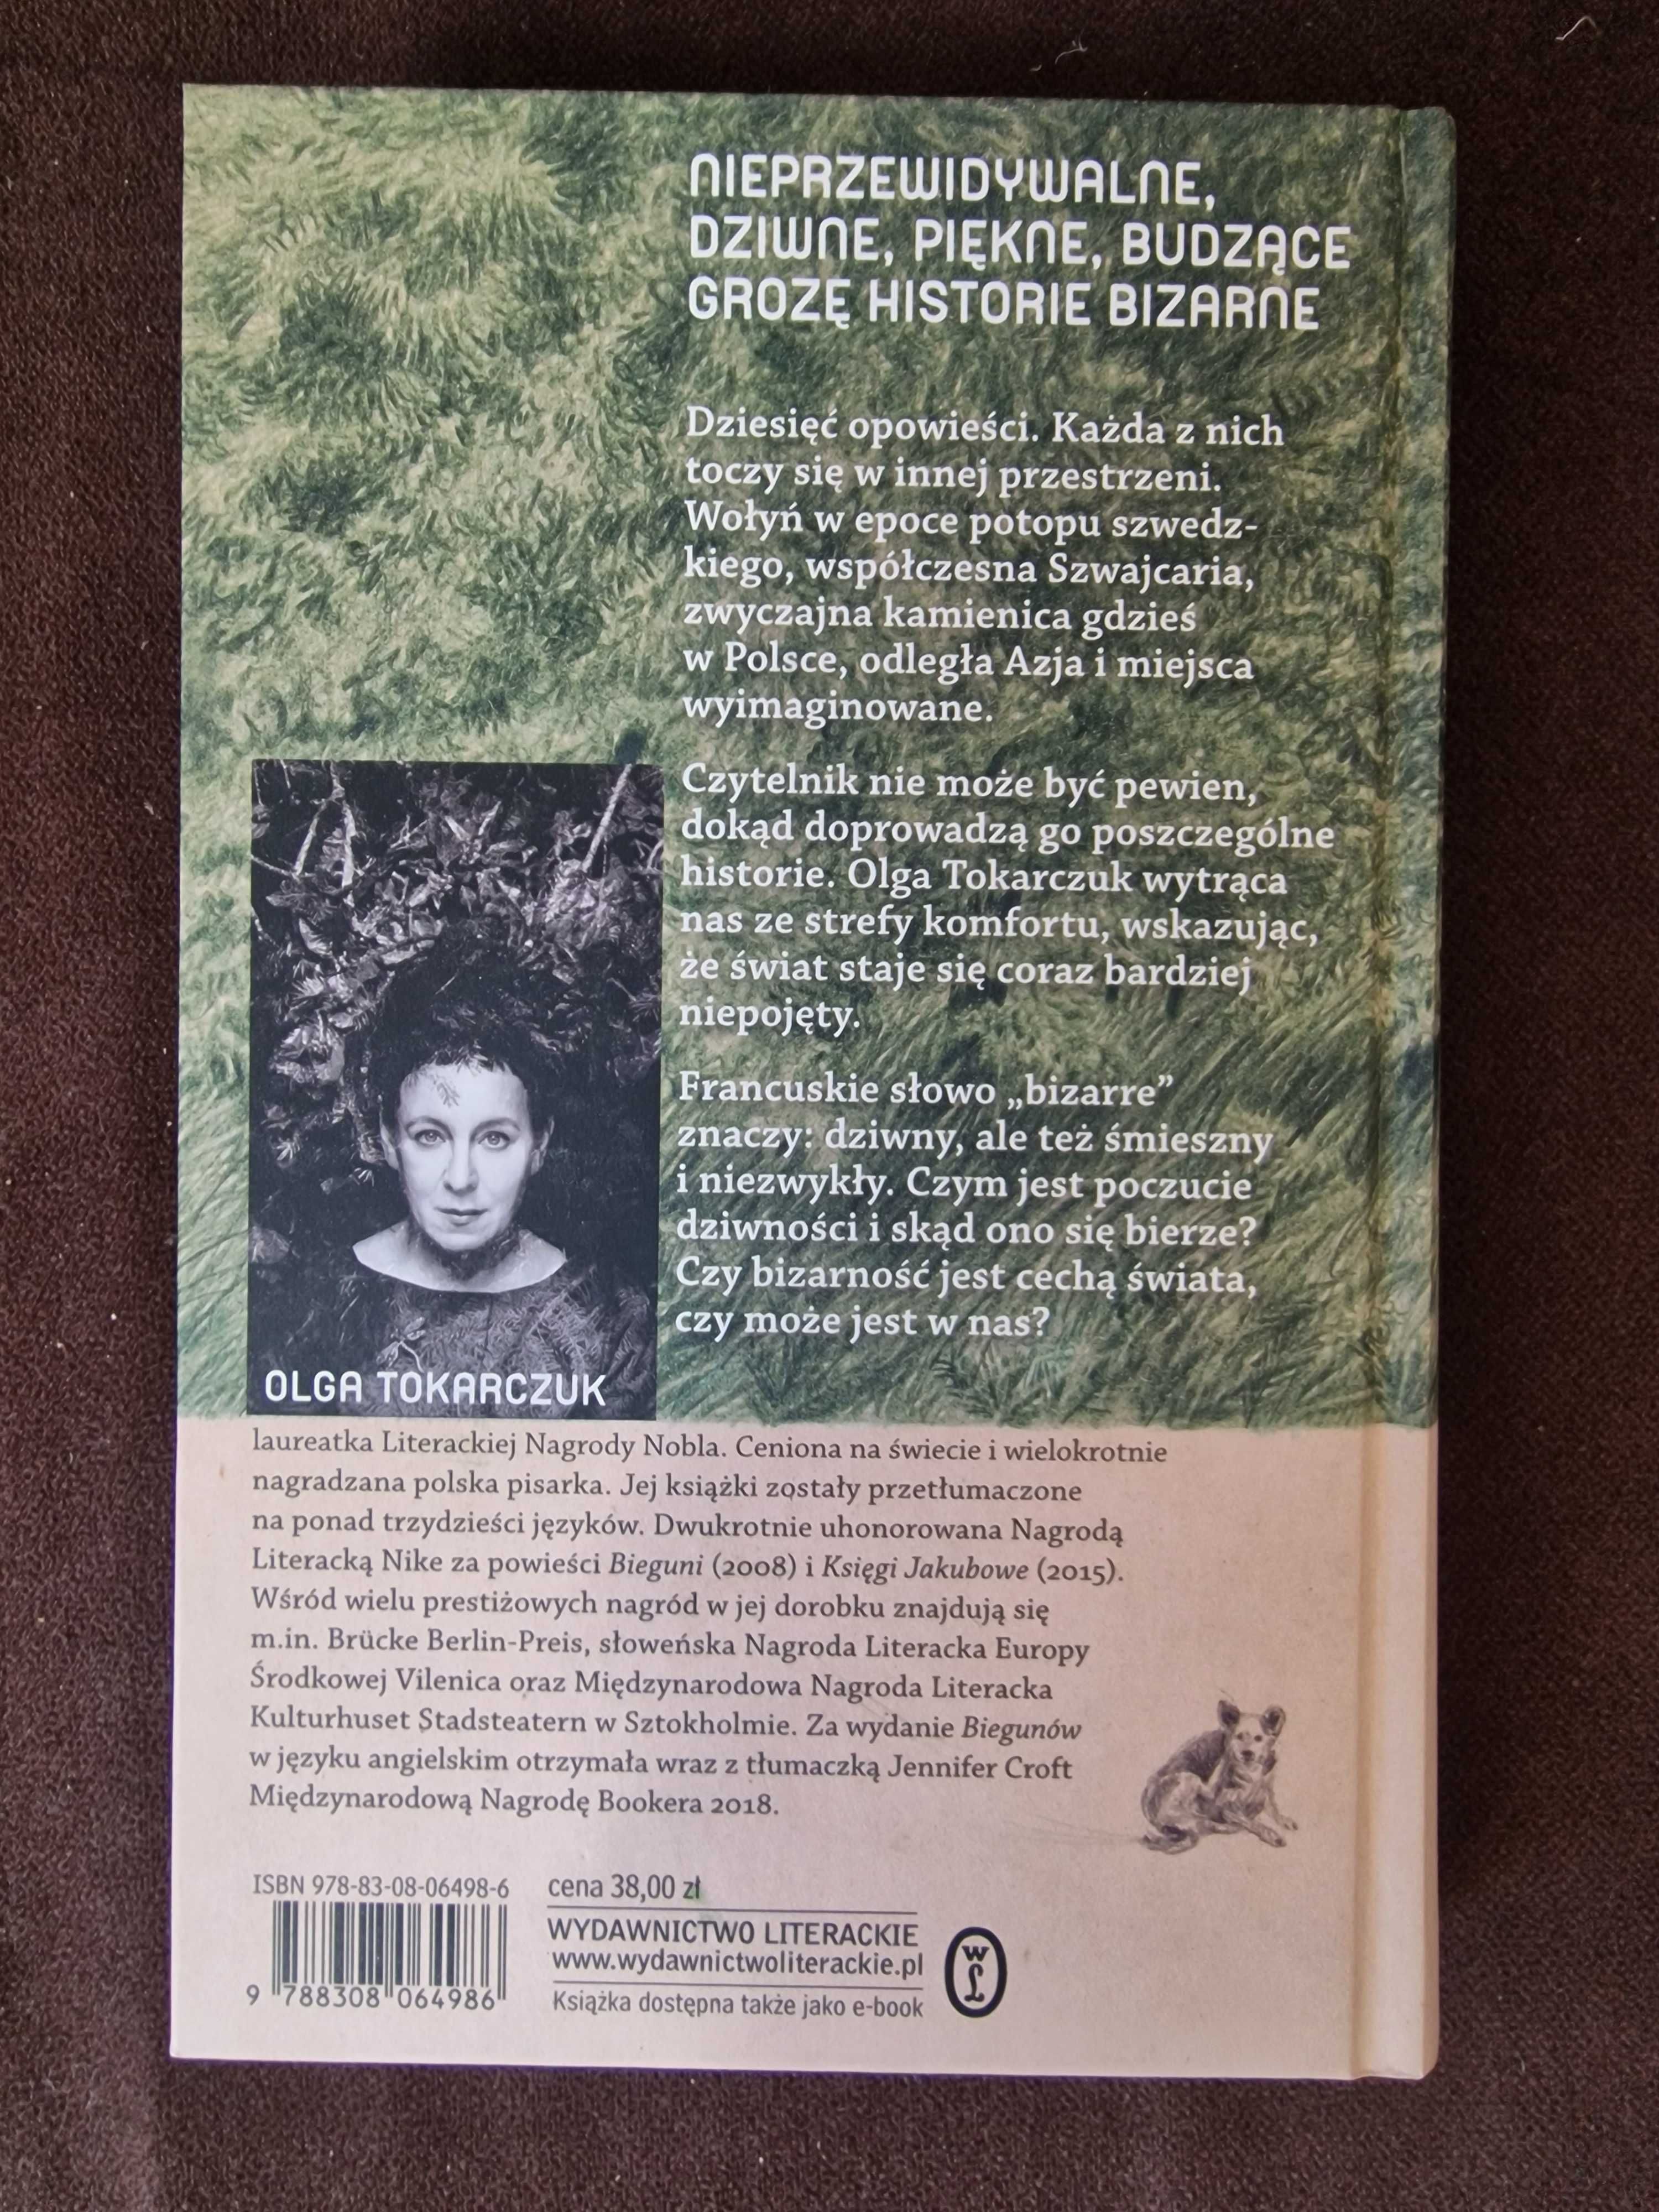 Opowiadania Bizarne, Ostatnie historie - Olga Tokarczuk - 2 książki